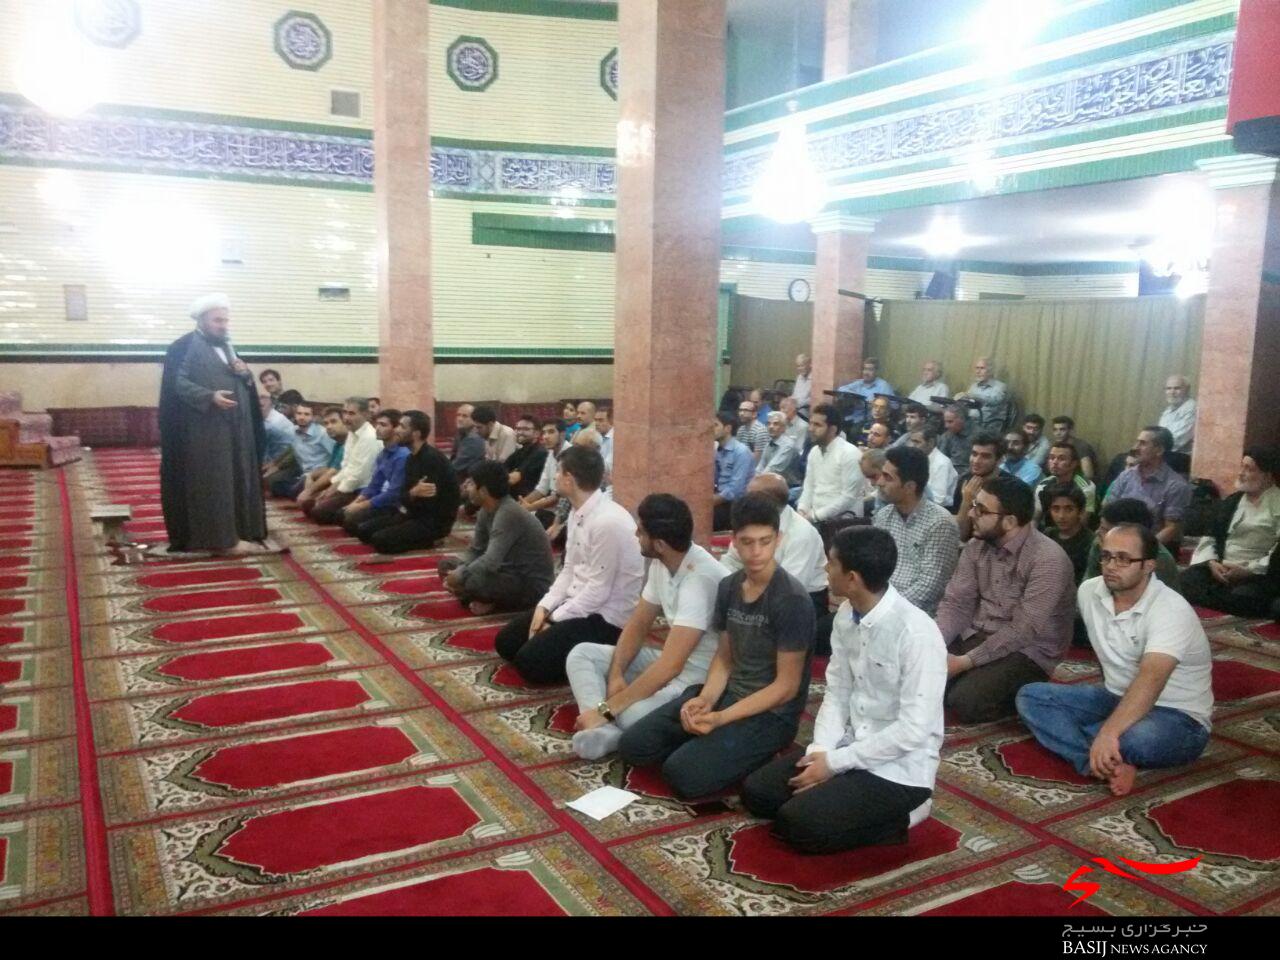 طرح مسجد محور با حضور بسیجیان در مساجد استان البرز اجرای یمیشود